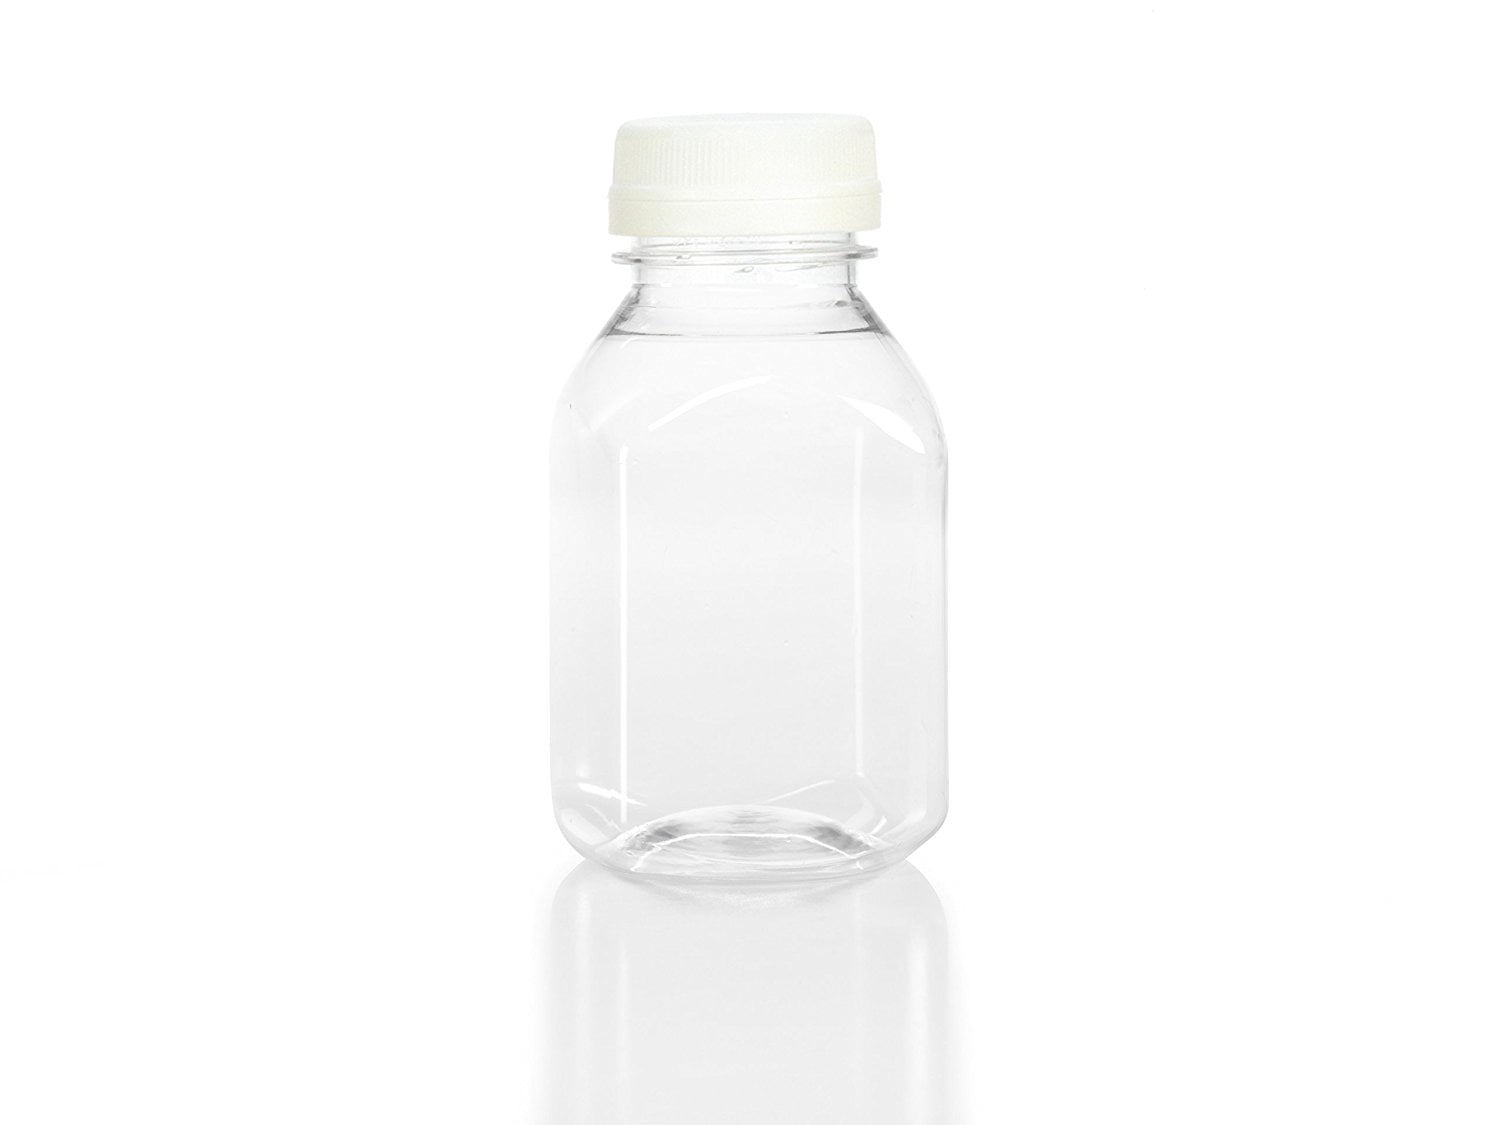 150 Pcs 8oz Plastic Juice Bottles with Caps Drink Containers with Leak  Proof Lids Bulk Empty Reusabl…See more 150 Pcs 8oz Plastic Juice Bottles  with